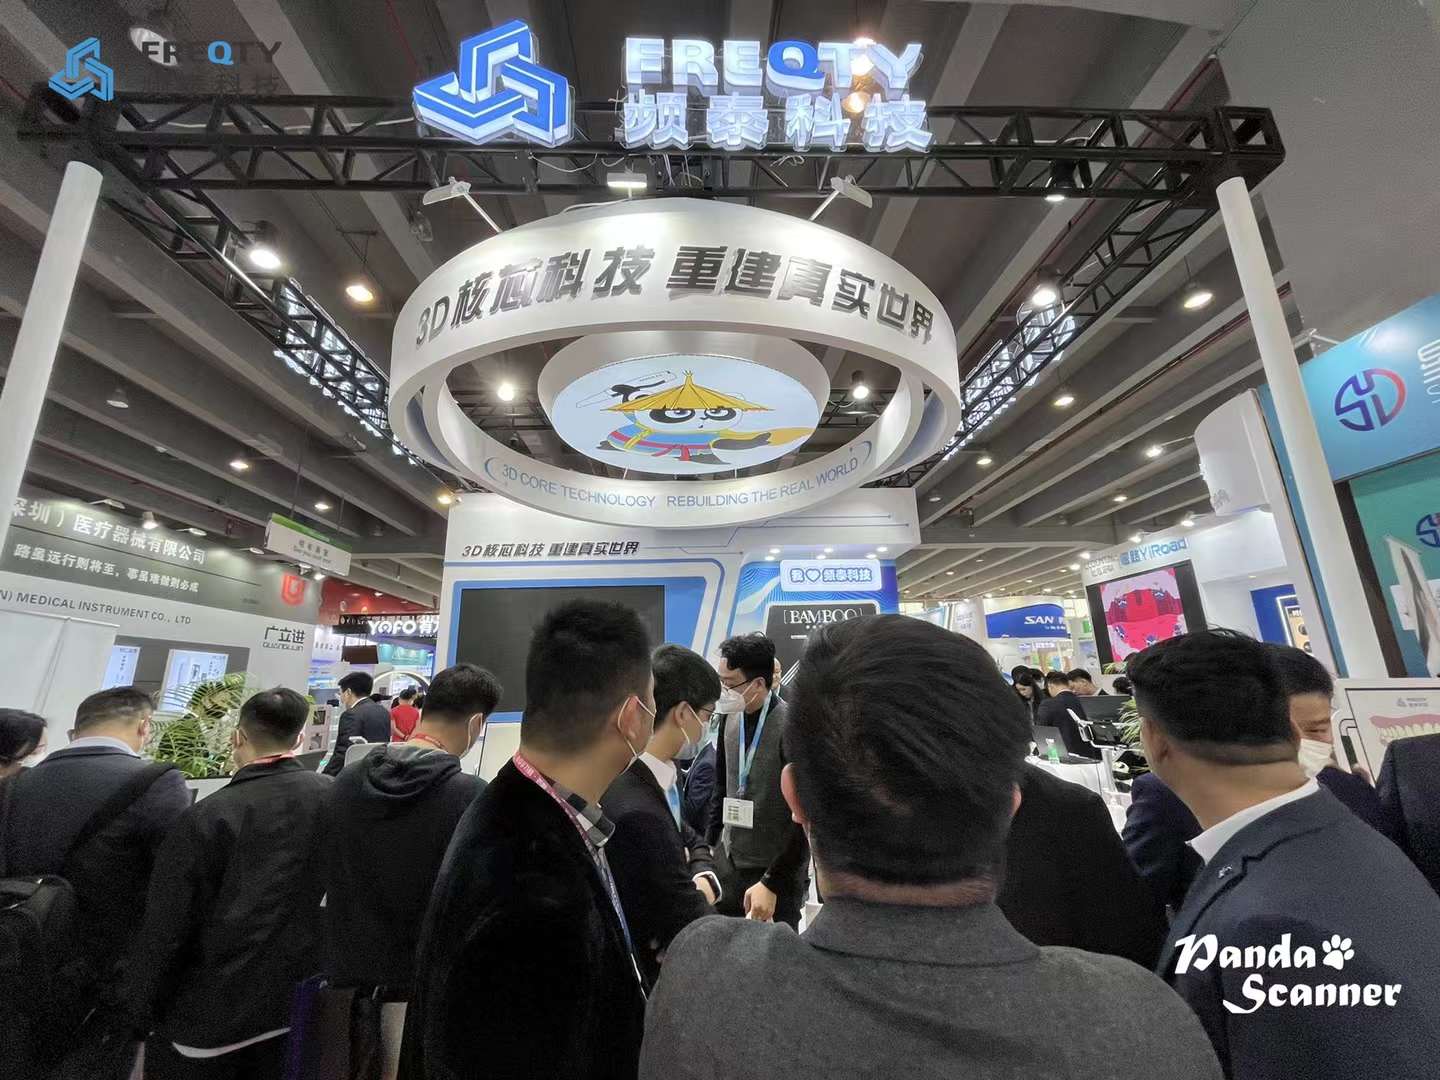 Hội chợ triển lãm quốc tế Nha khoa Nam Trung Quốc lần thứ 28 đã kết thúc thành công